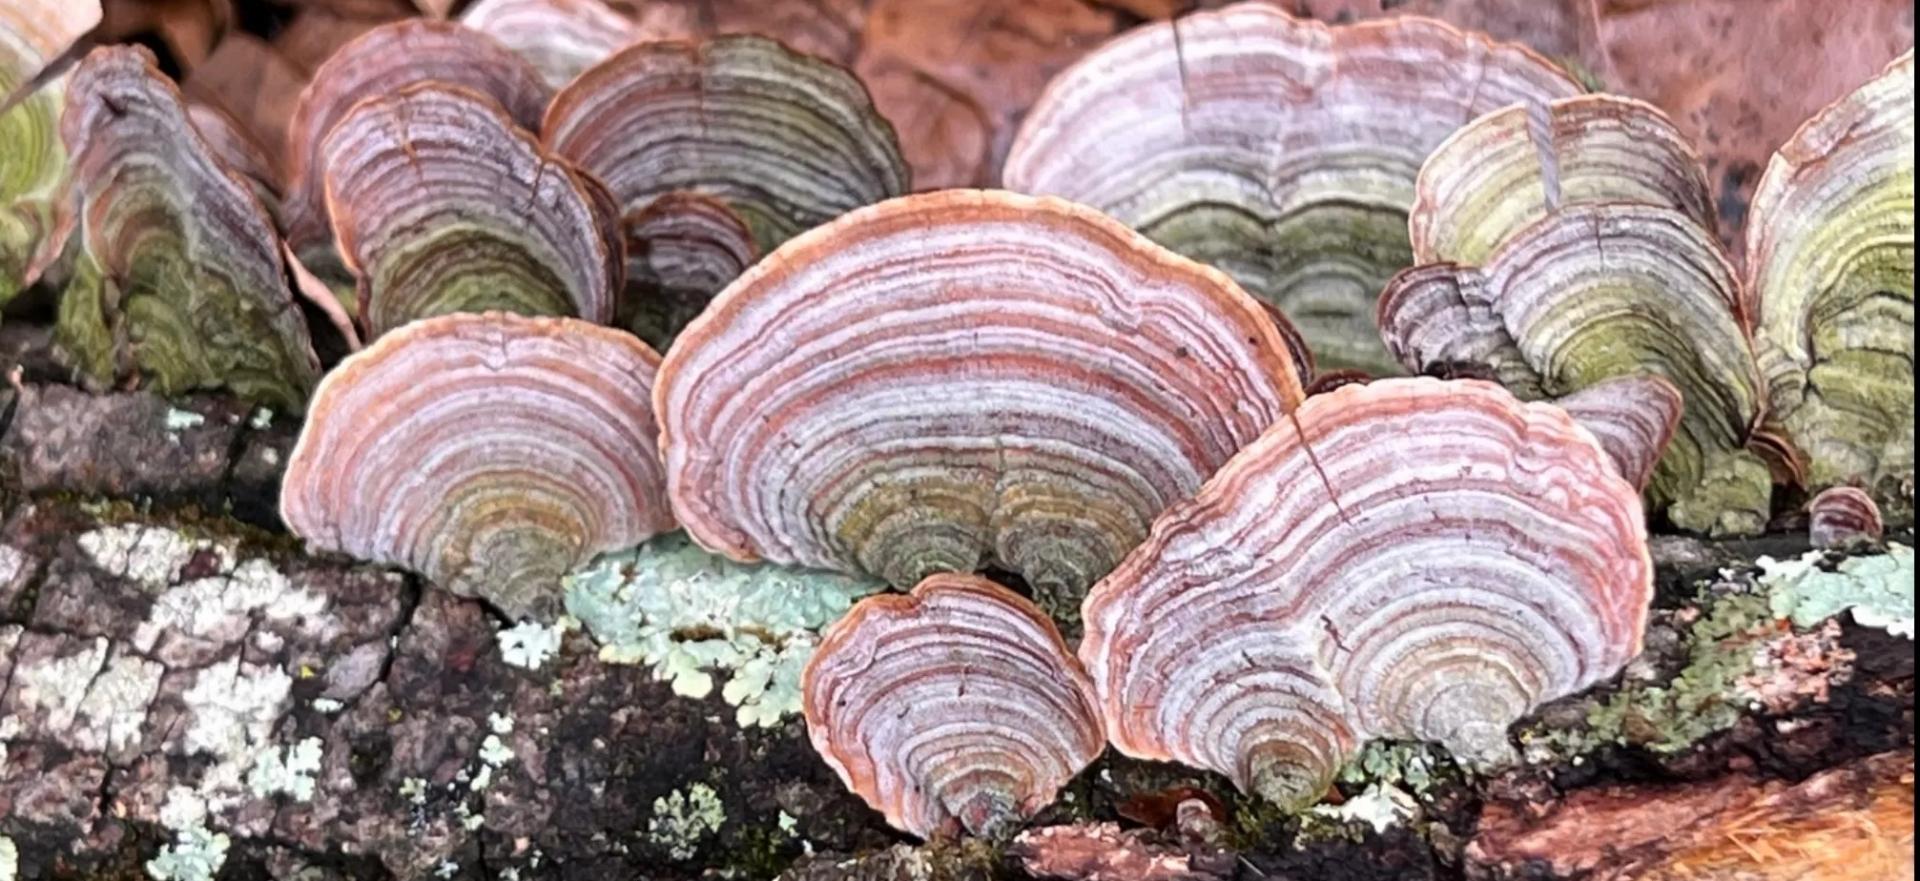 Beautiful mushrooms on forest floor